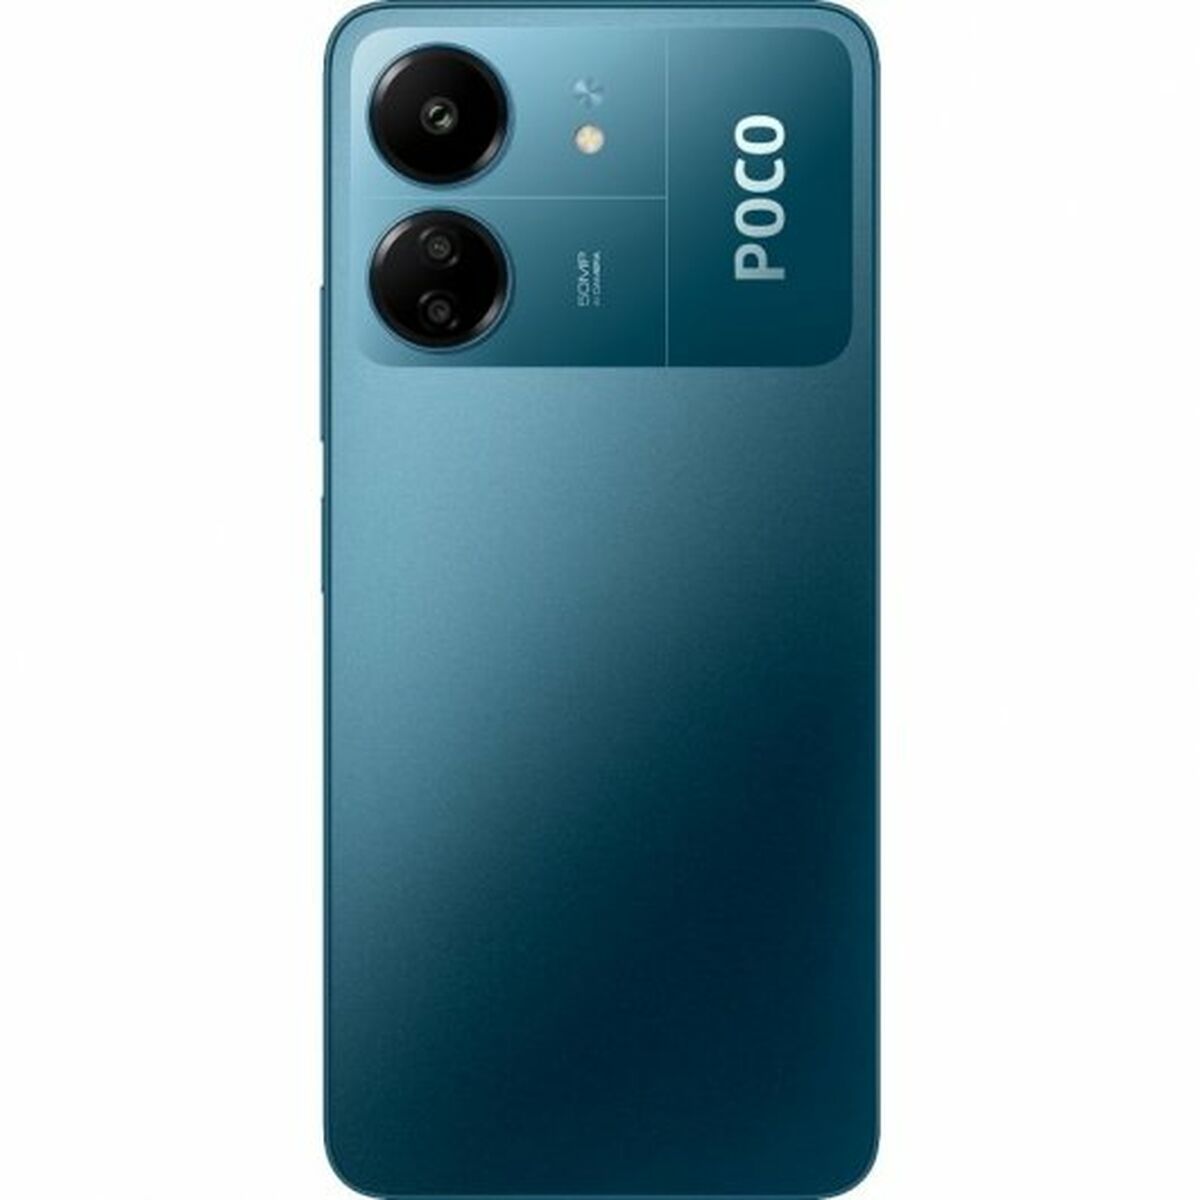 Smartphone Pocophone PO C65 8 256BL 256 GB Azul